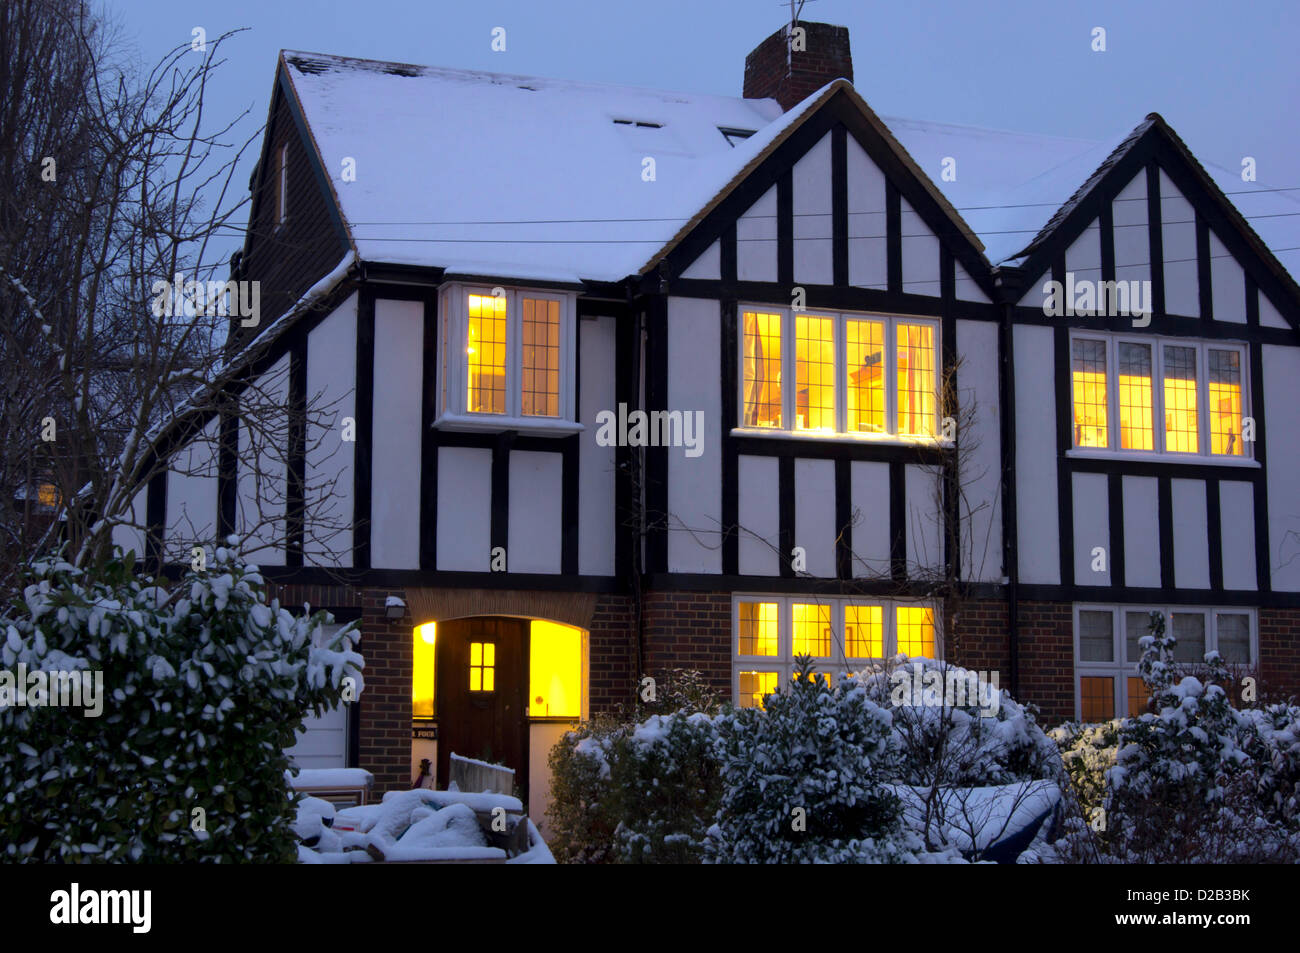 Surrey, UK. 18th Jan, 2013. UK, England, Surrey, house snow at dusk Stock Photo